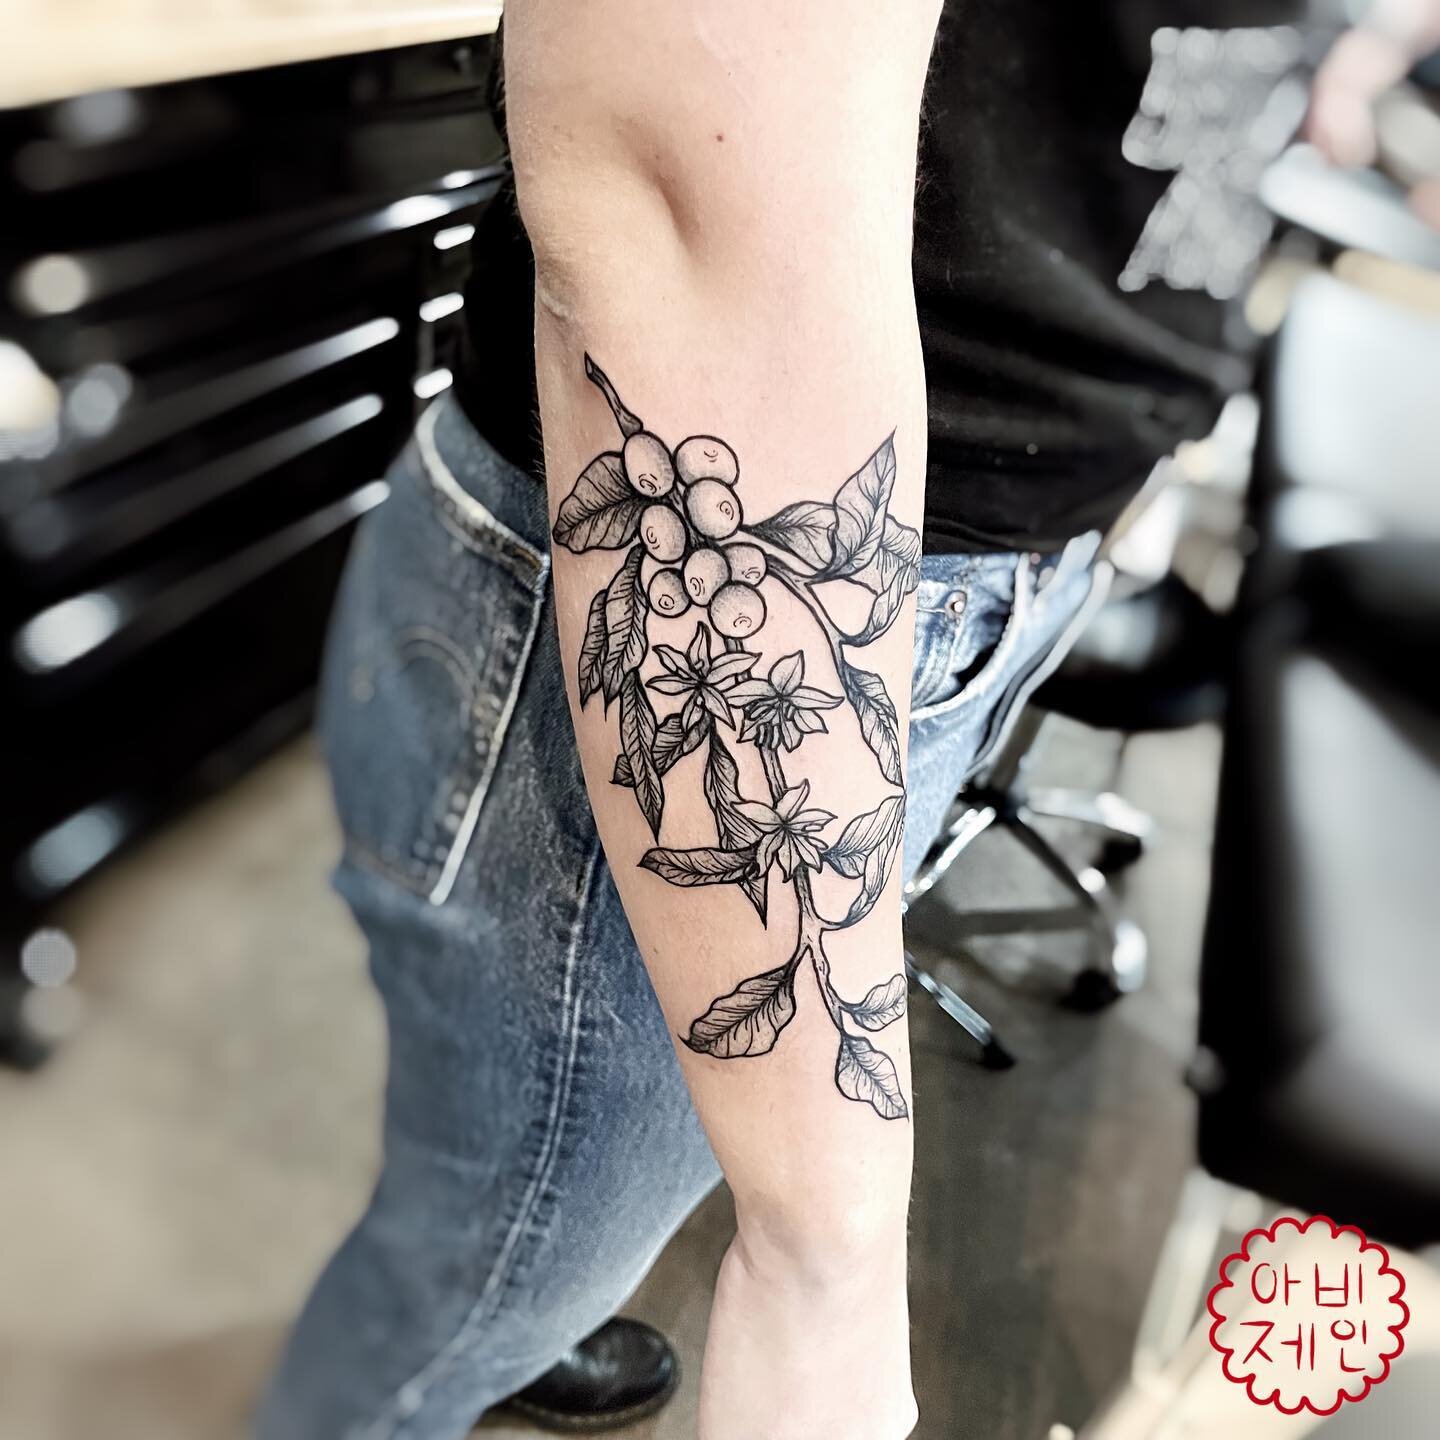 Thank you&hellip;.🌿

#tattoo #flashtattoo #flashtat #ink #inked #tattoodrawing #drawing #linework #lineworktattoo #tattooartist #artist #tattooart #art #tattooing #minneapolis #minneapolistattoo #minneapolistattooartist #minnesota #minnesotatattoo #